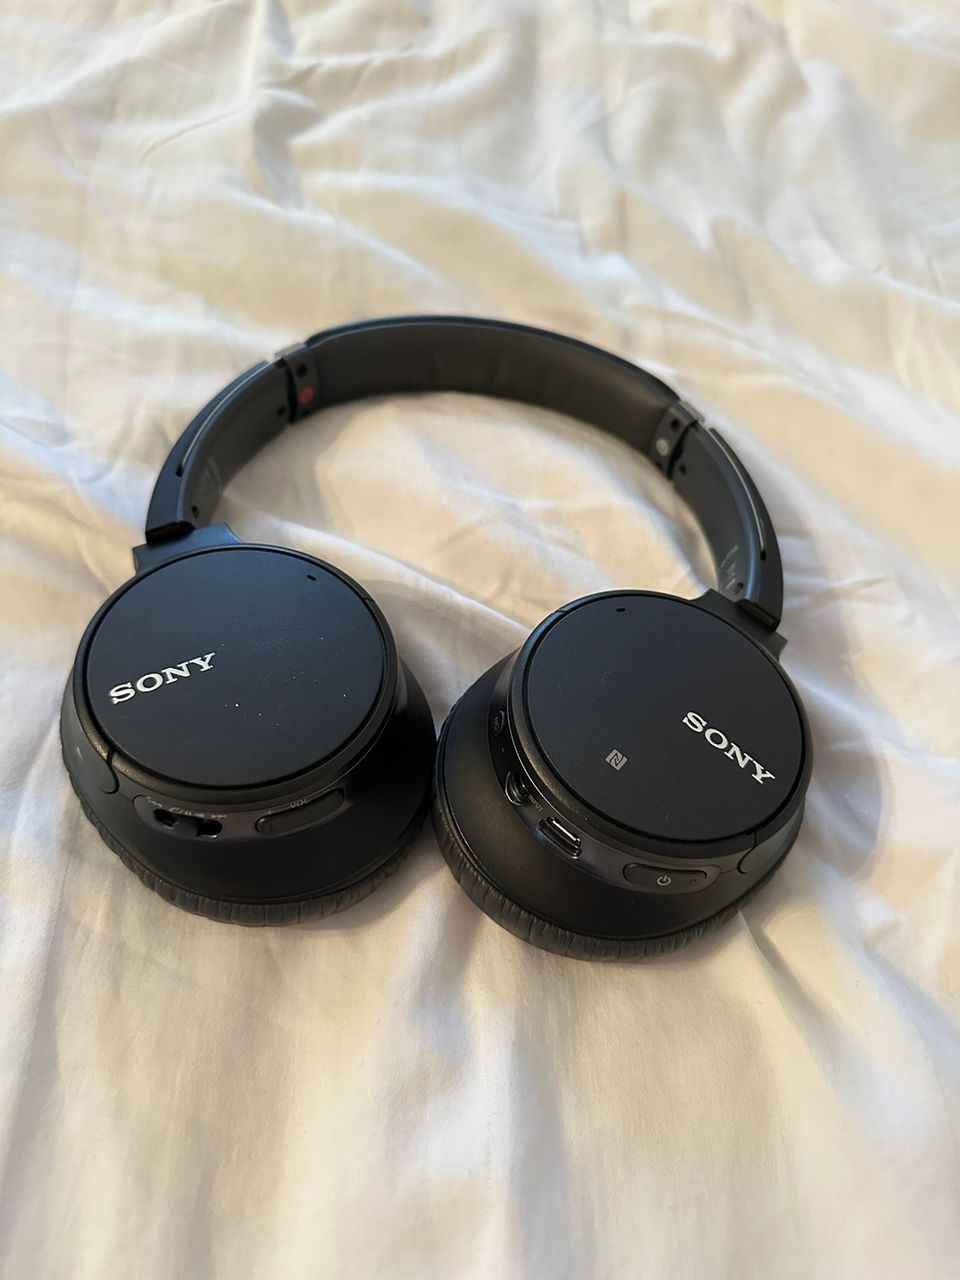 Sony vastamelu kuulokkeet